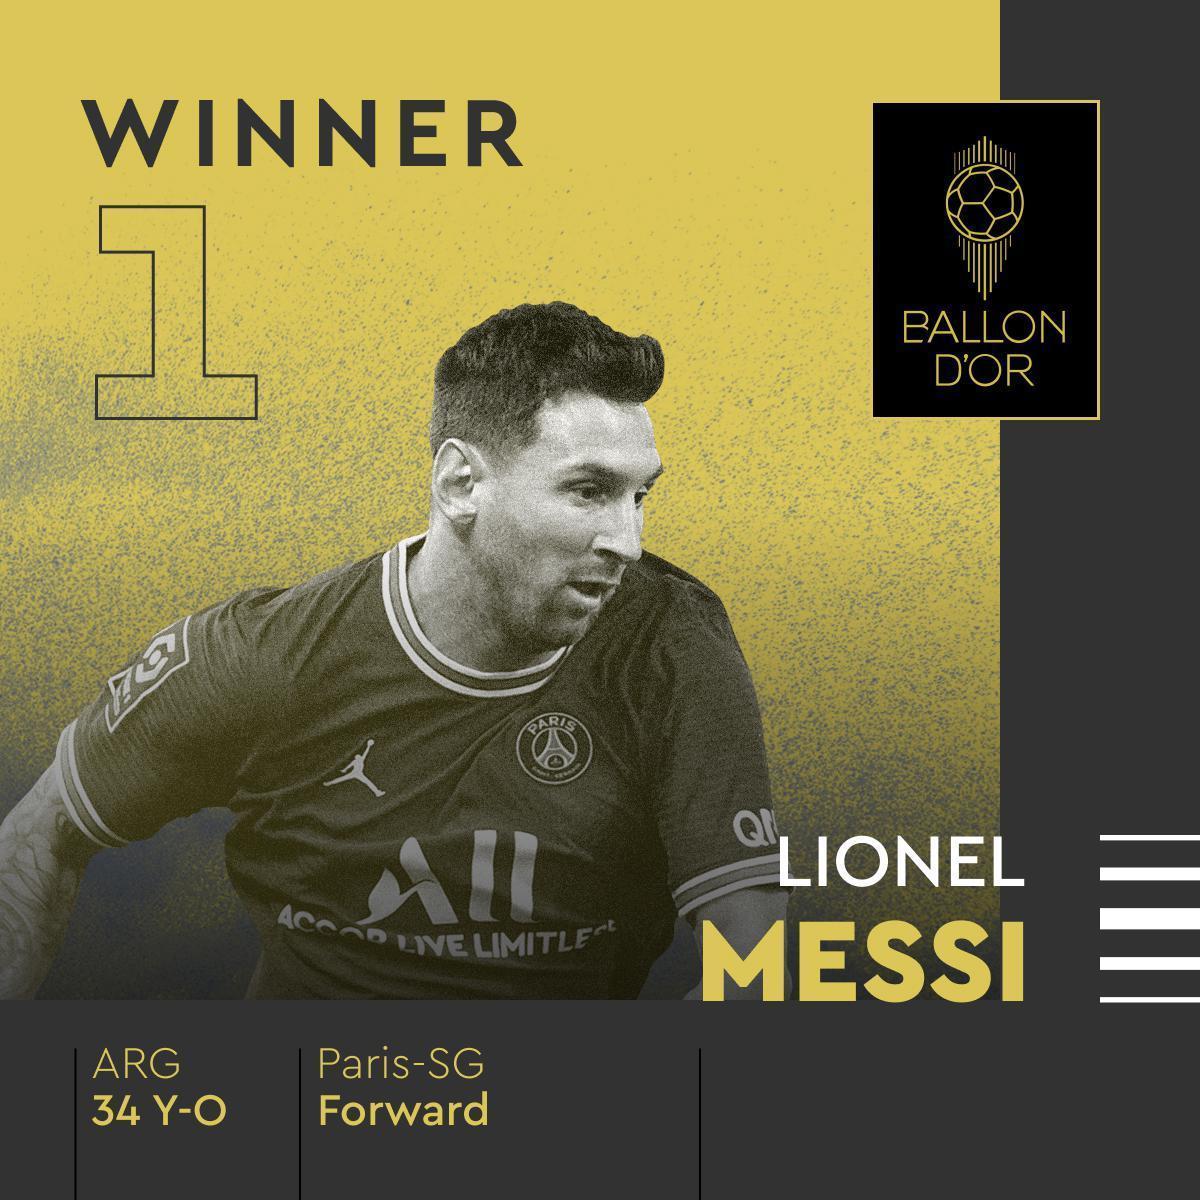 Ballon dOr ödülünün sahibi Lionel Messi Cristiano Ronaldoya büyük şok